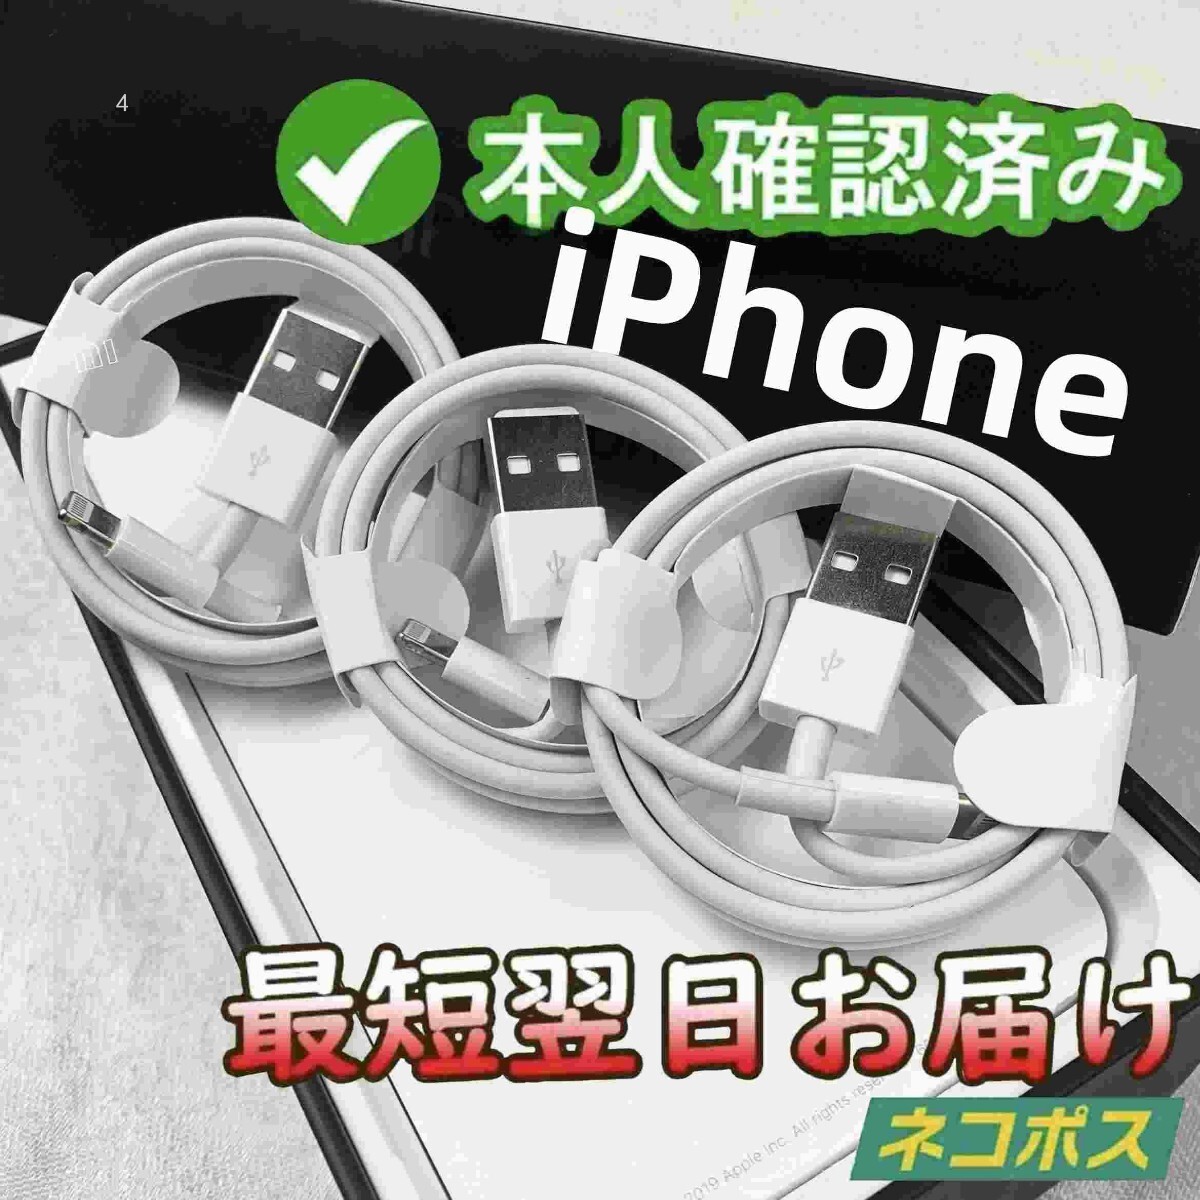 3本1m iPhone 充電器 Apple純正品質 新品 データ転送ケーブル 品質 白 新品 データ転送ケーブル アイフォンケーブル  データ転送ケー(2tH)